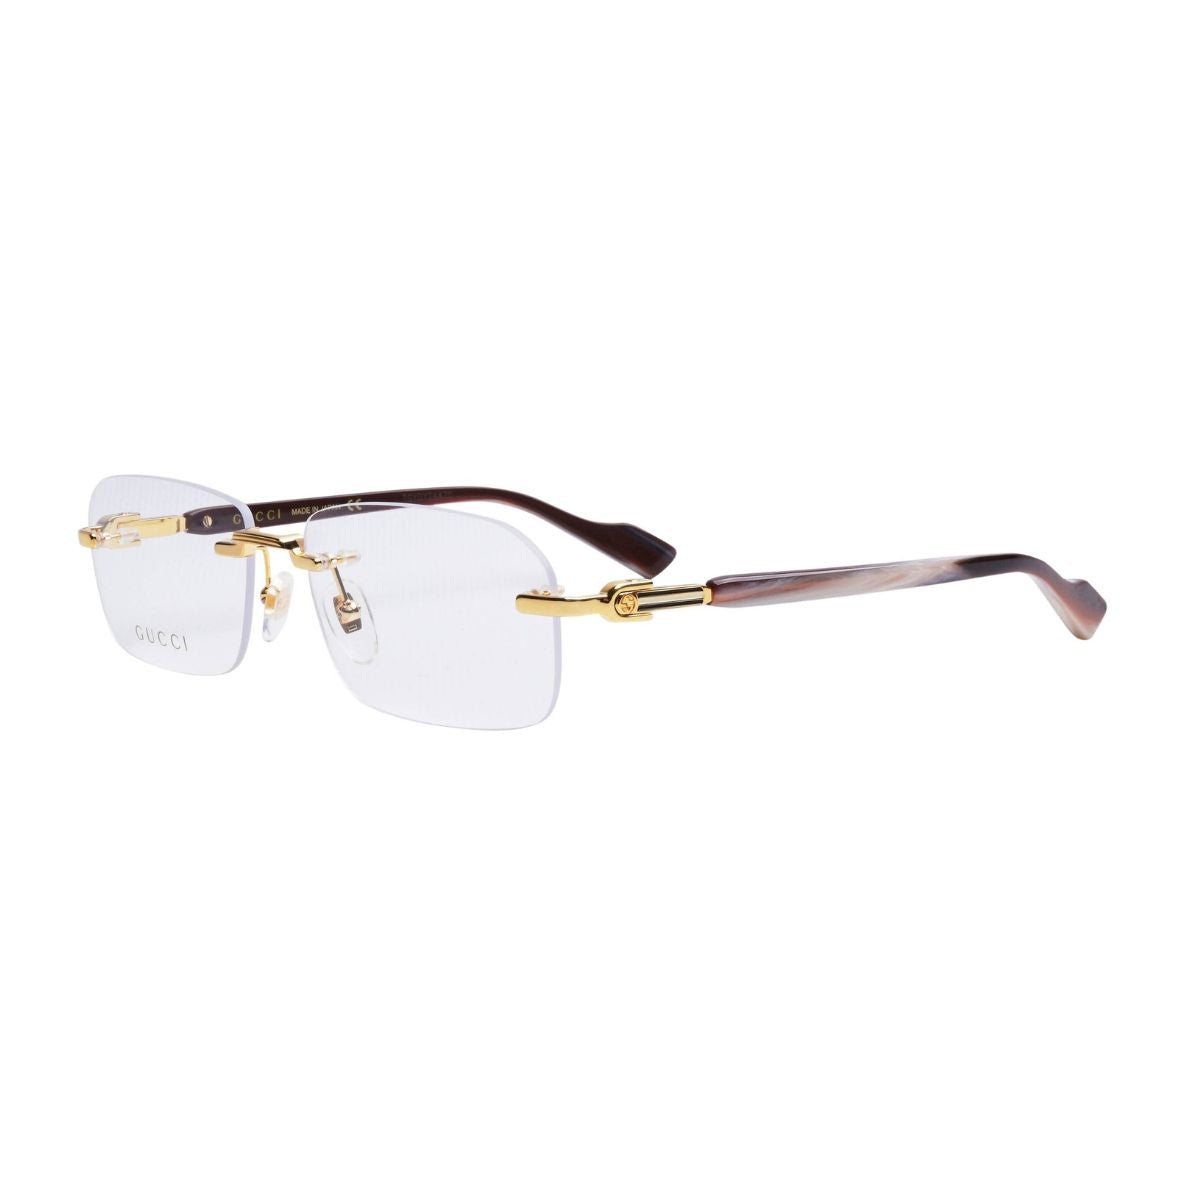 "Gucci 1221O 002 online optical eyewear frame for men's at optorium"